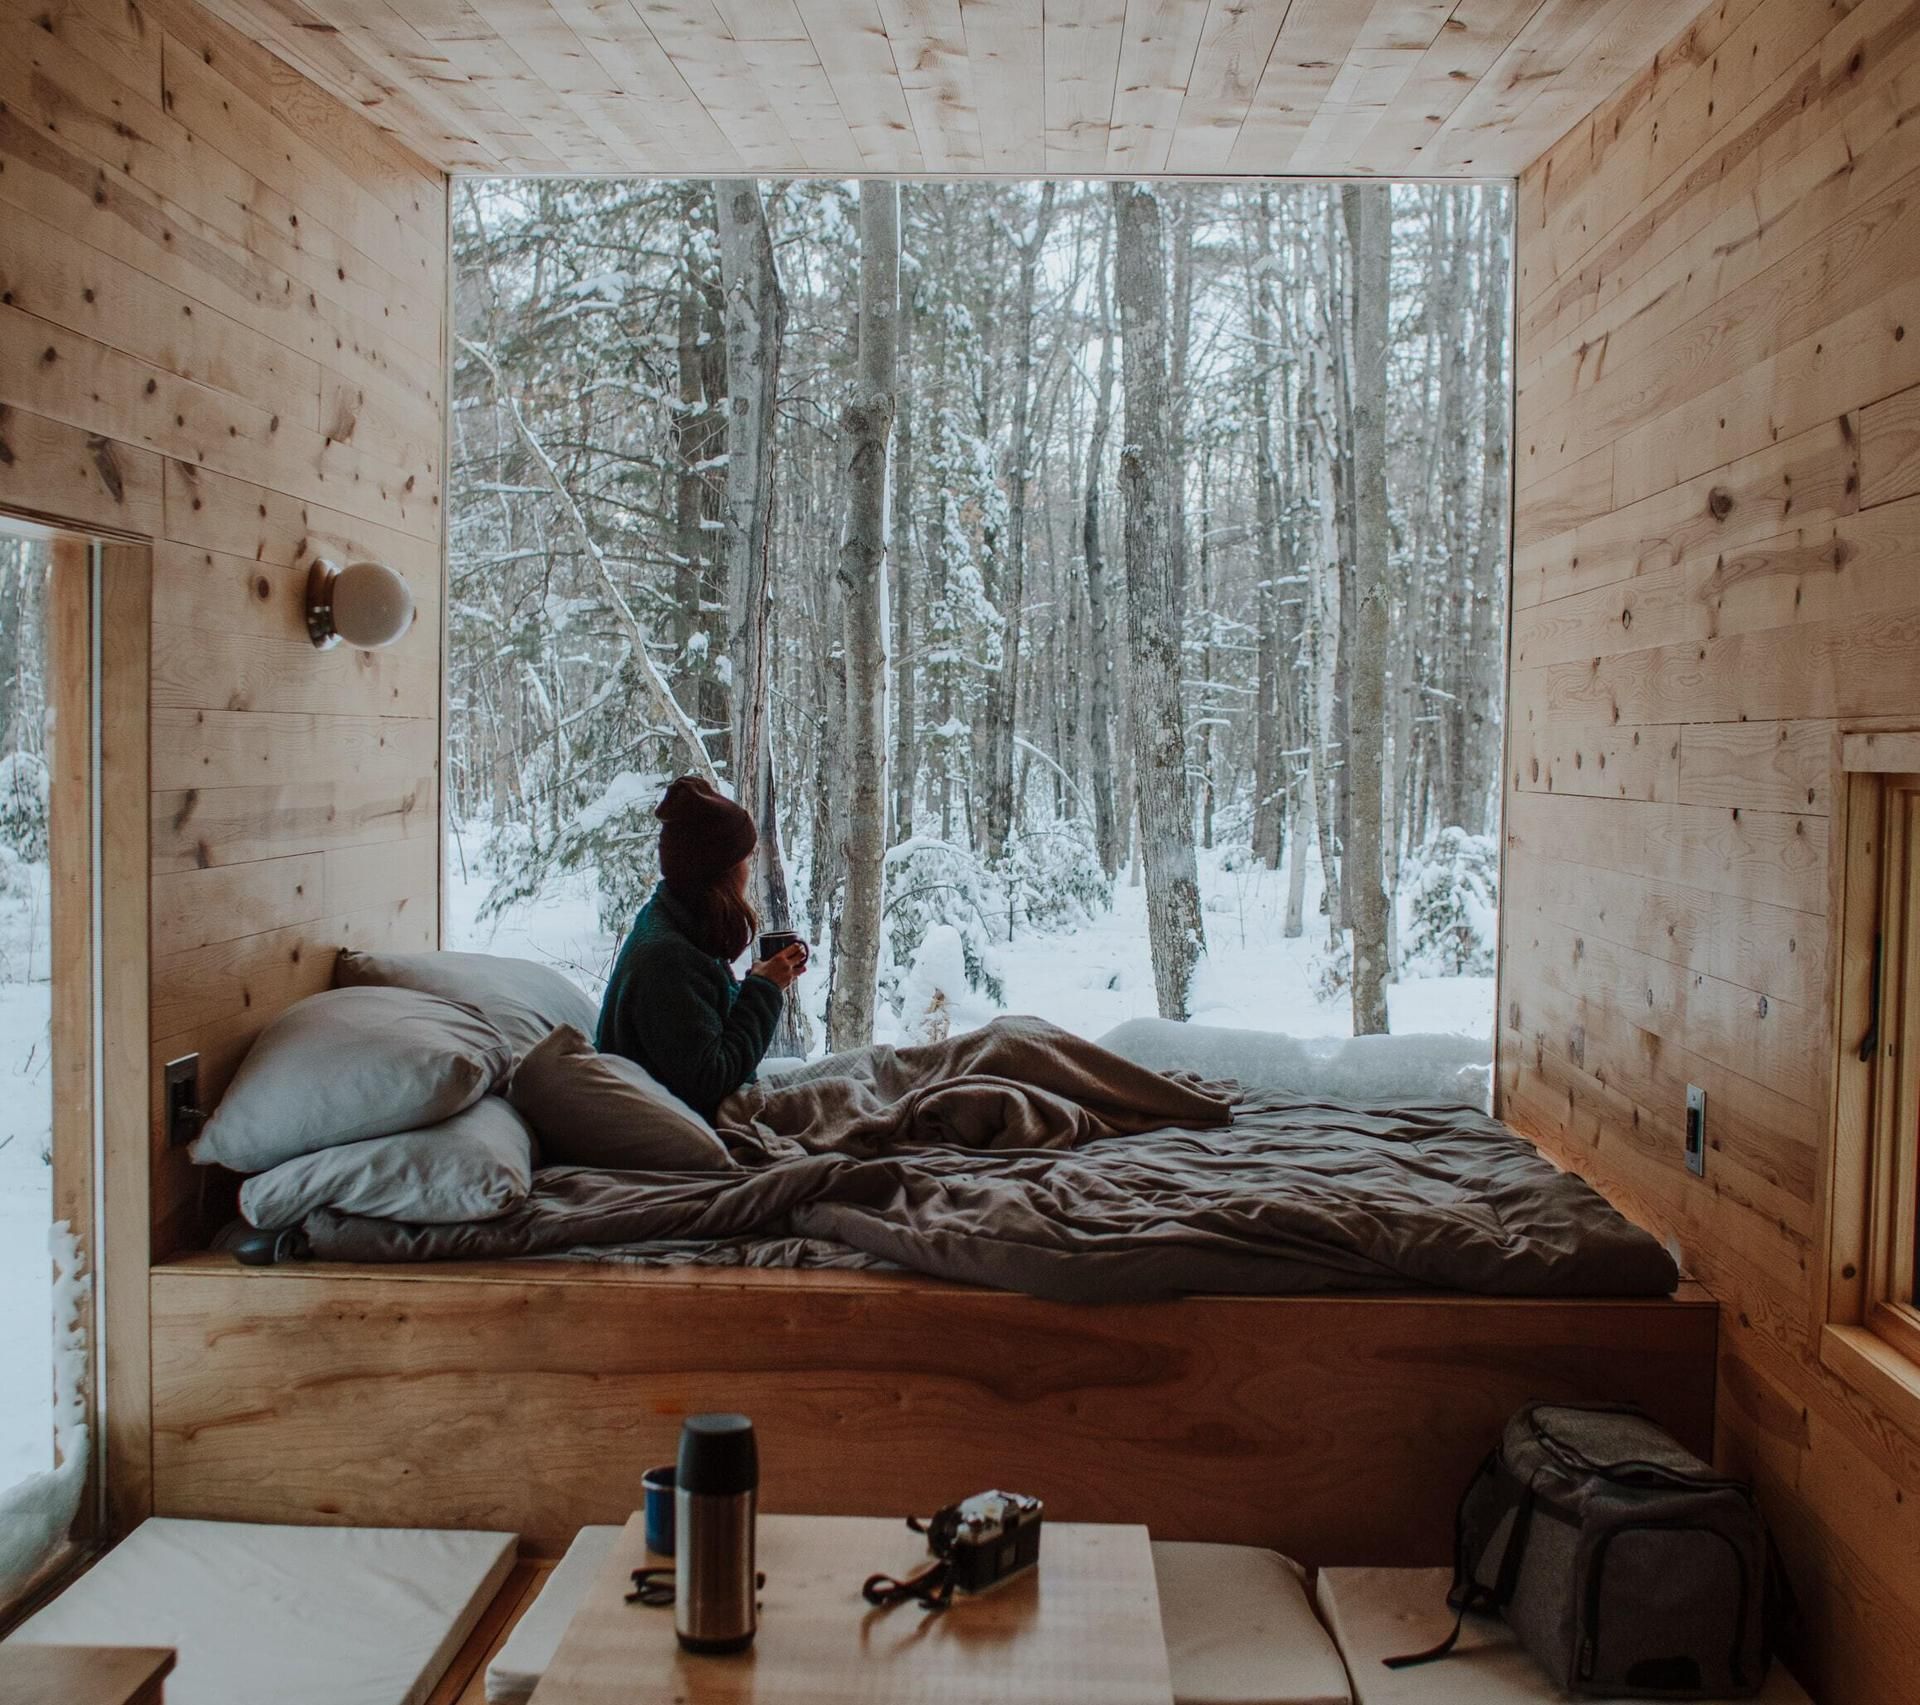 Frau auf einem Bett in einer Holzhütte